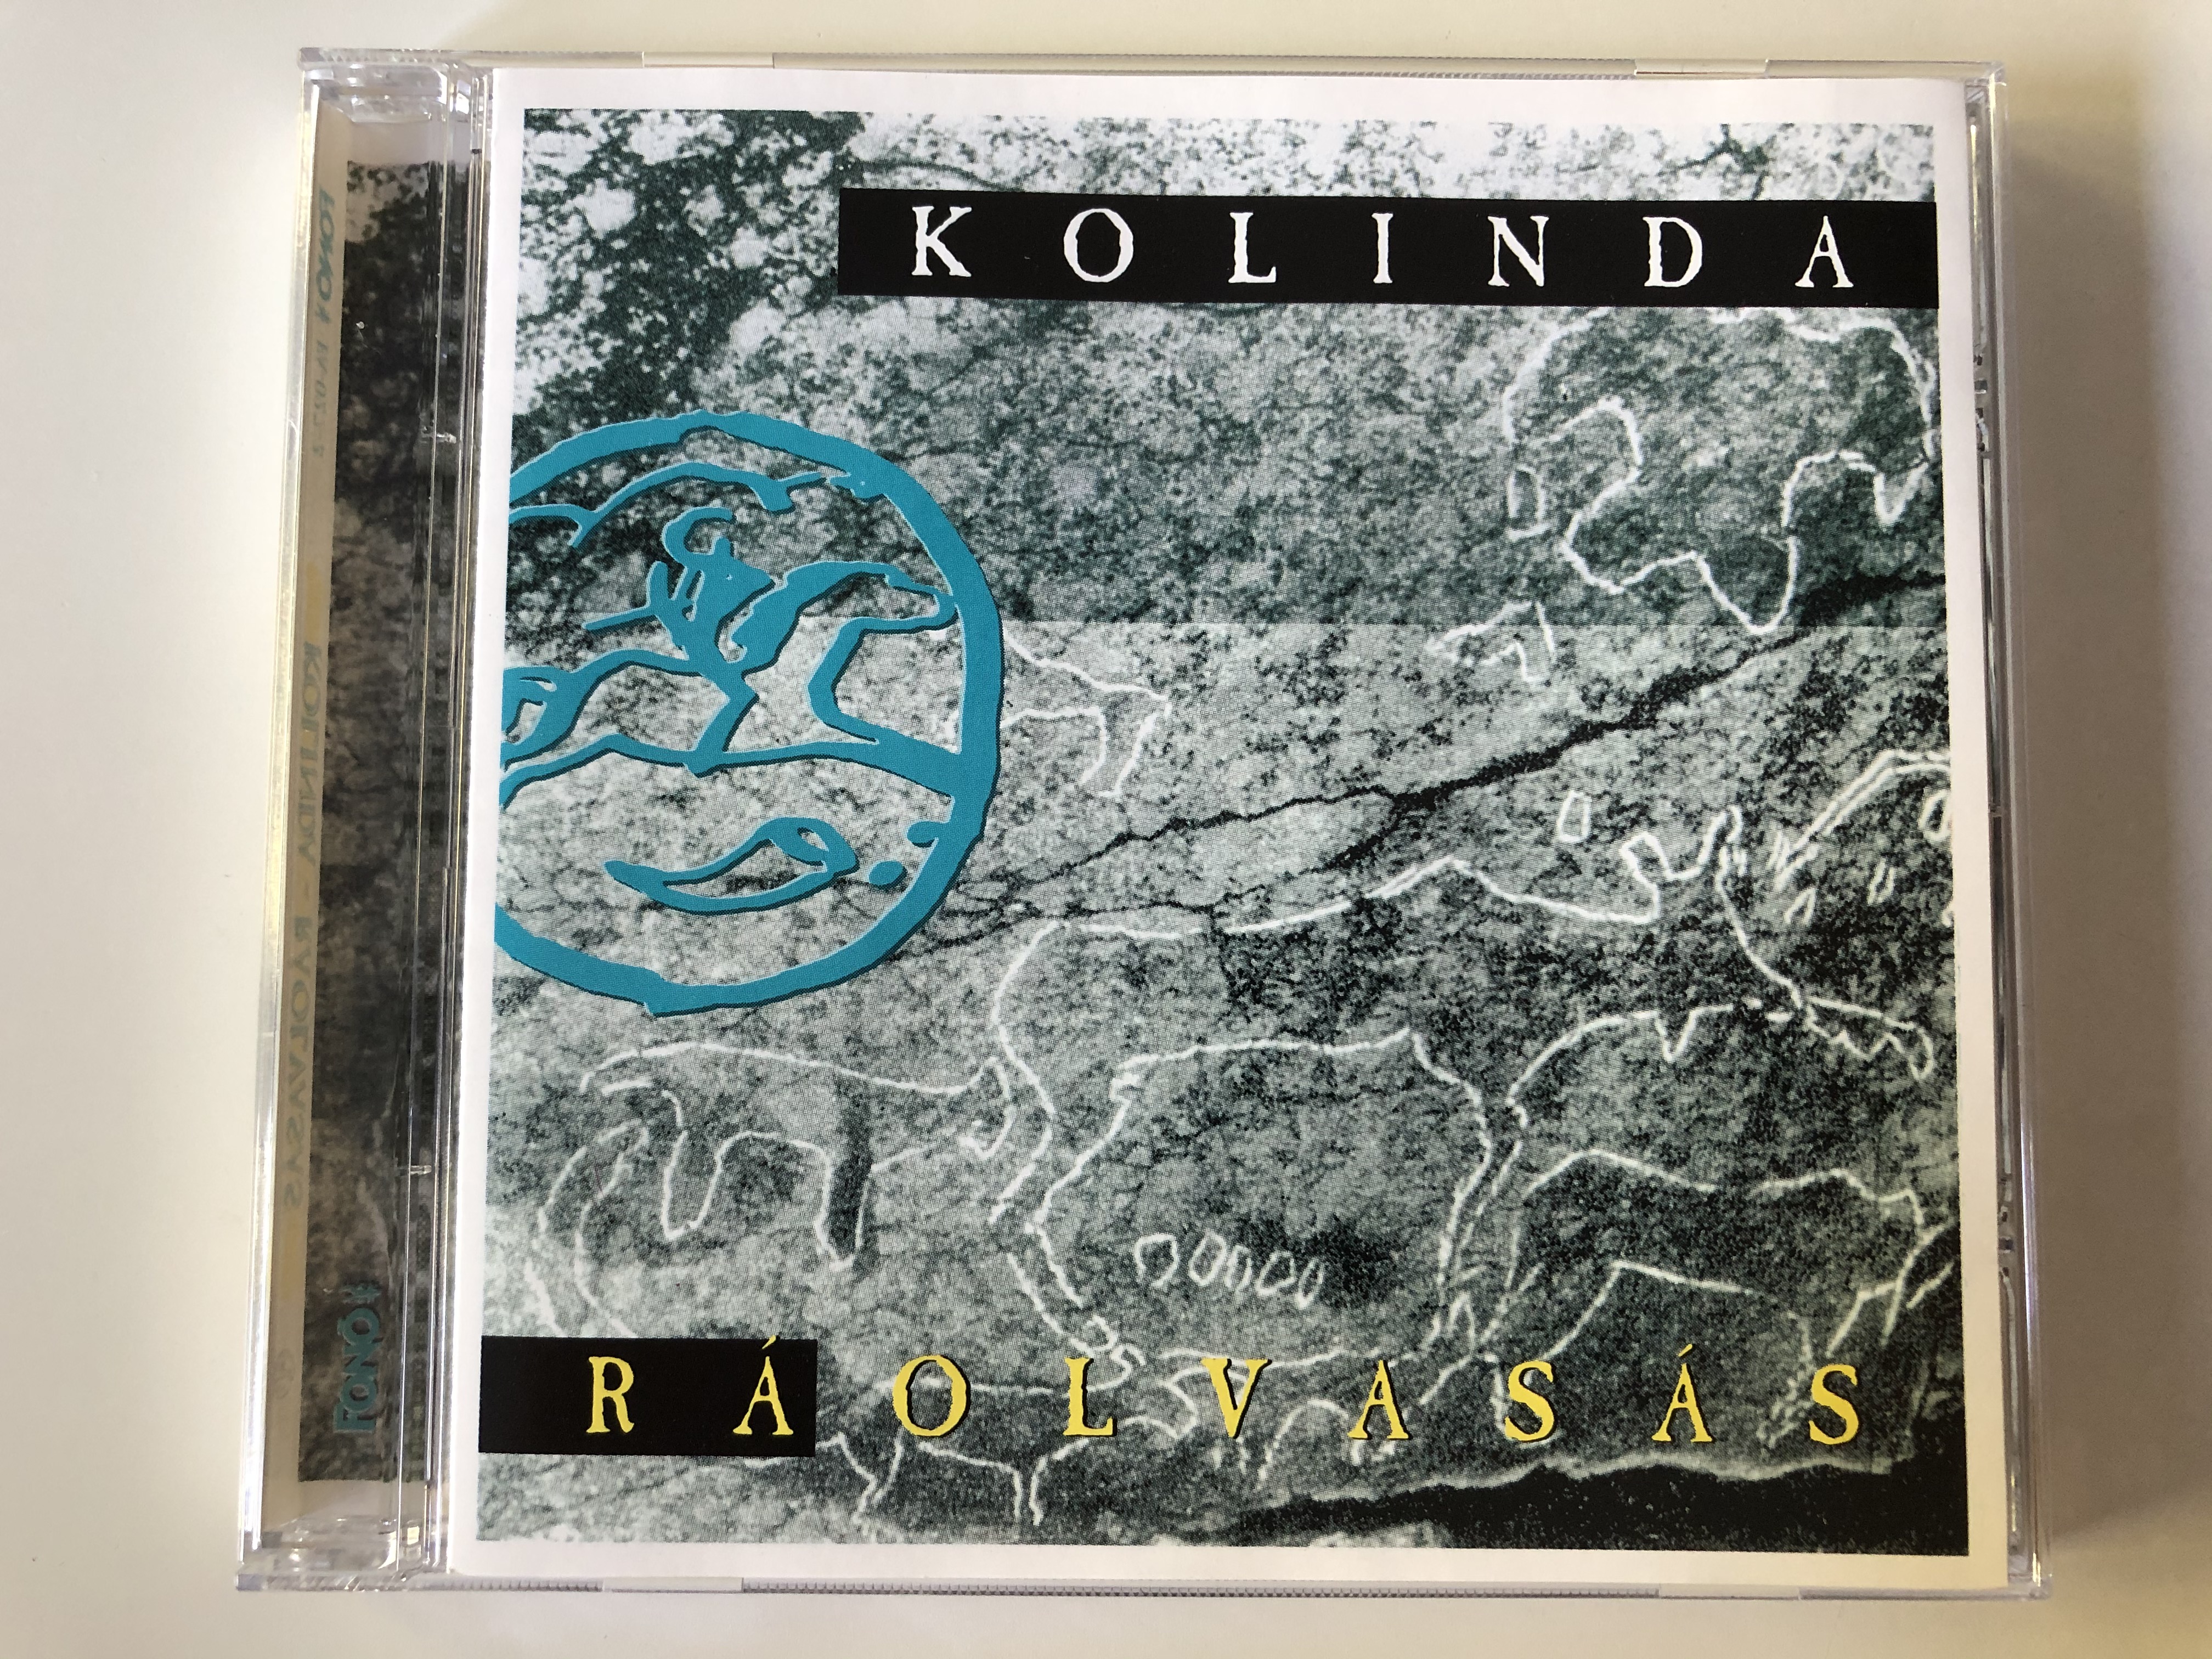 kolinda-r-olvas-s-fon-records-audio-cd-1997-fa-027-2-1-.jpg